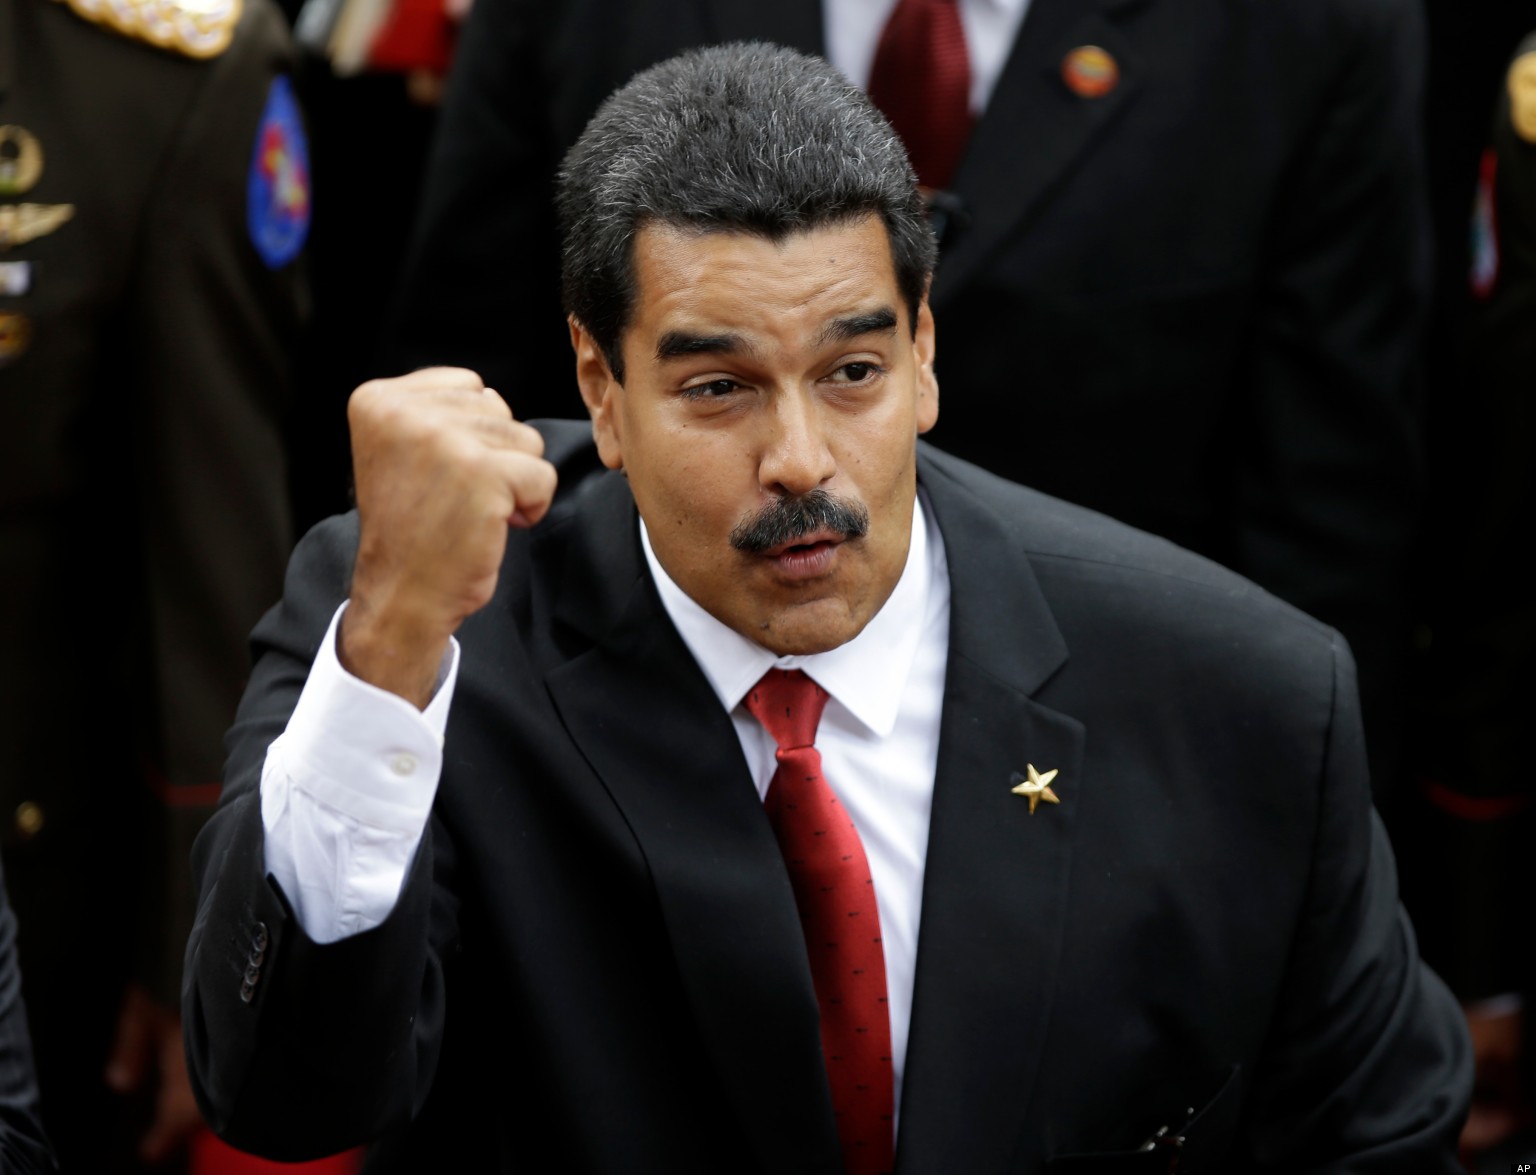 ¡Absurdo! Maduro pide transformar el sistema de salud en medio de la crisis hospitalaria